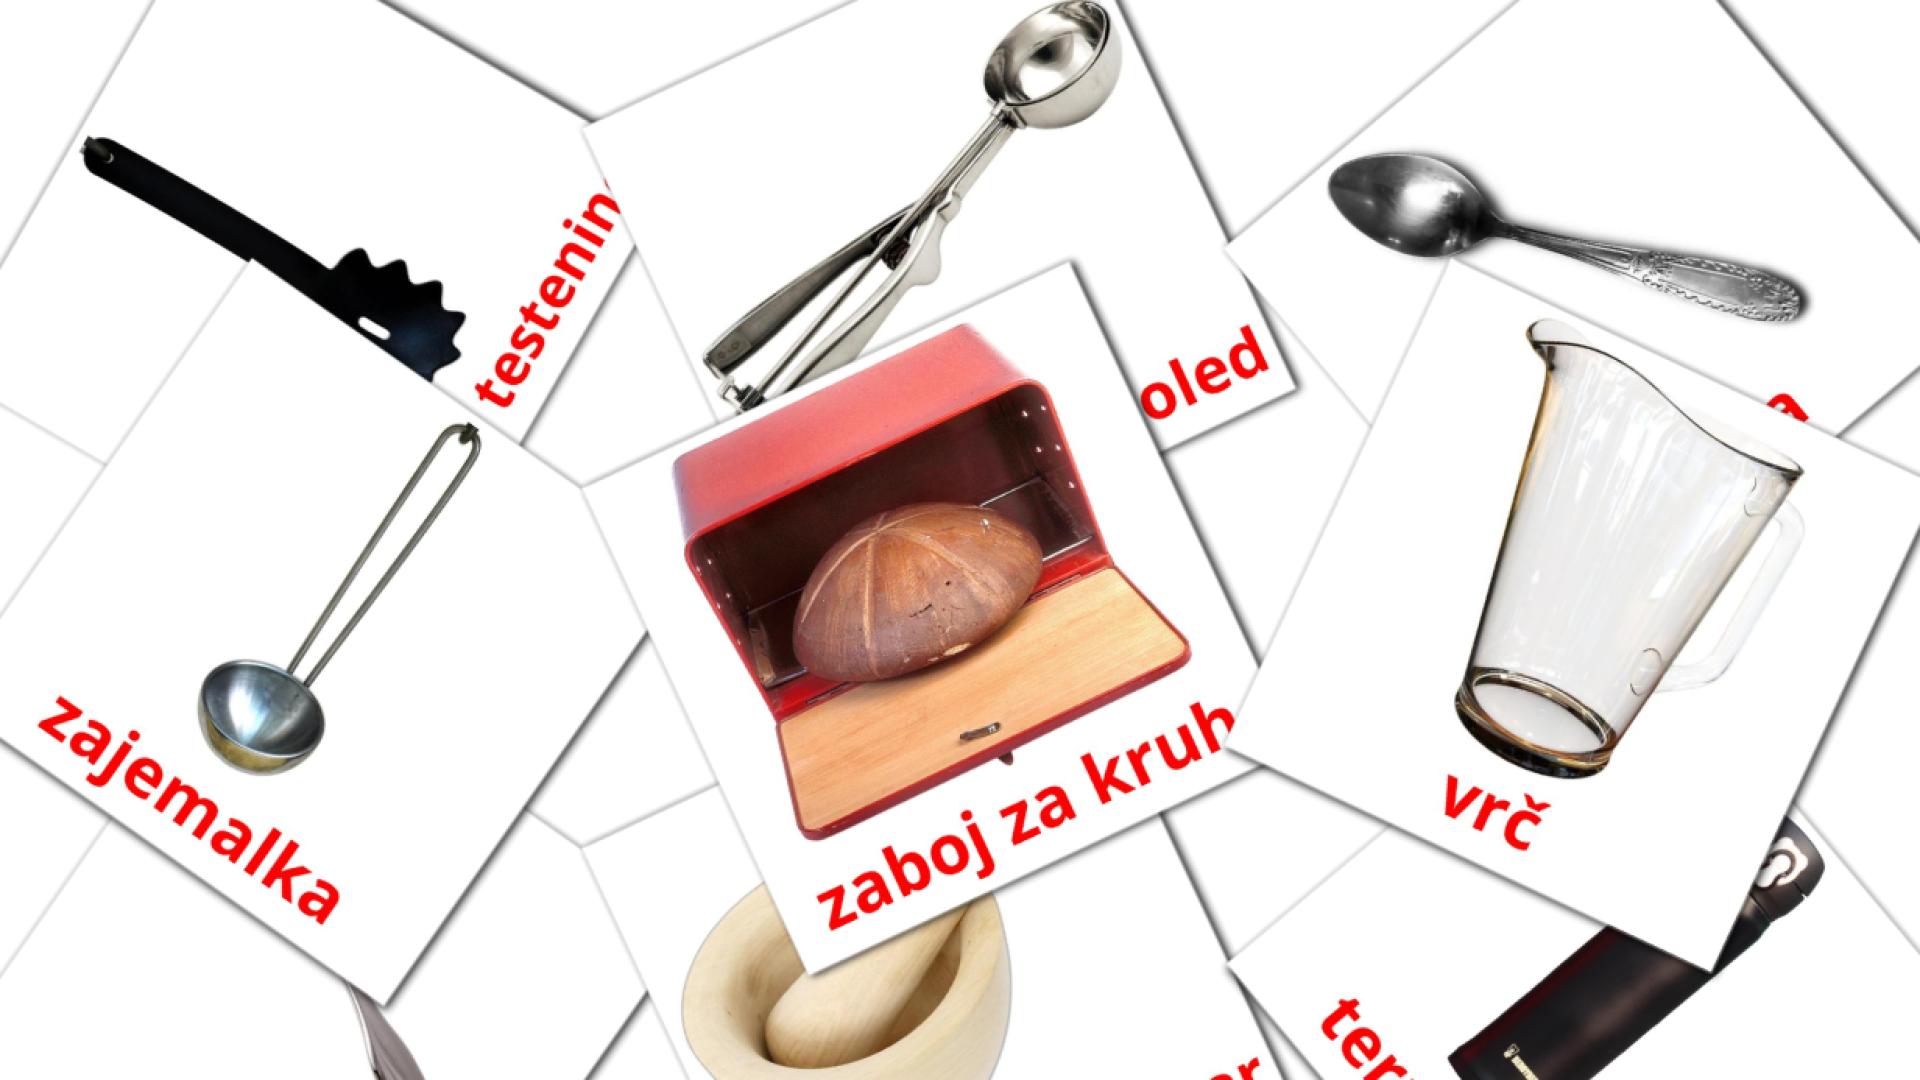 Kuhinja sloveens woordenschat flashcards